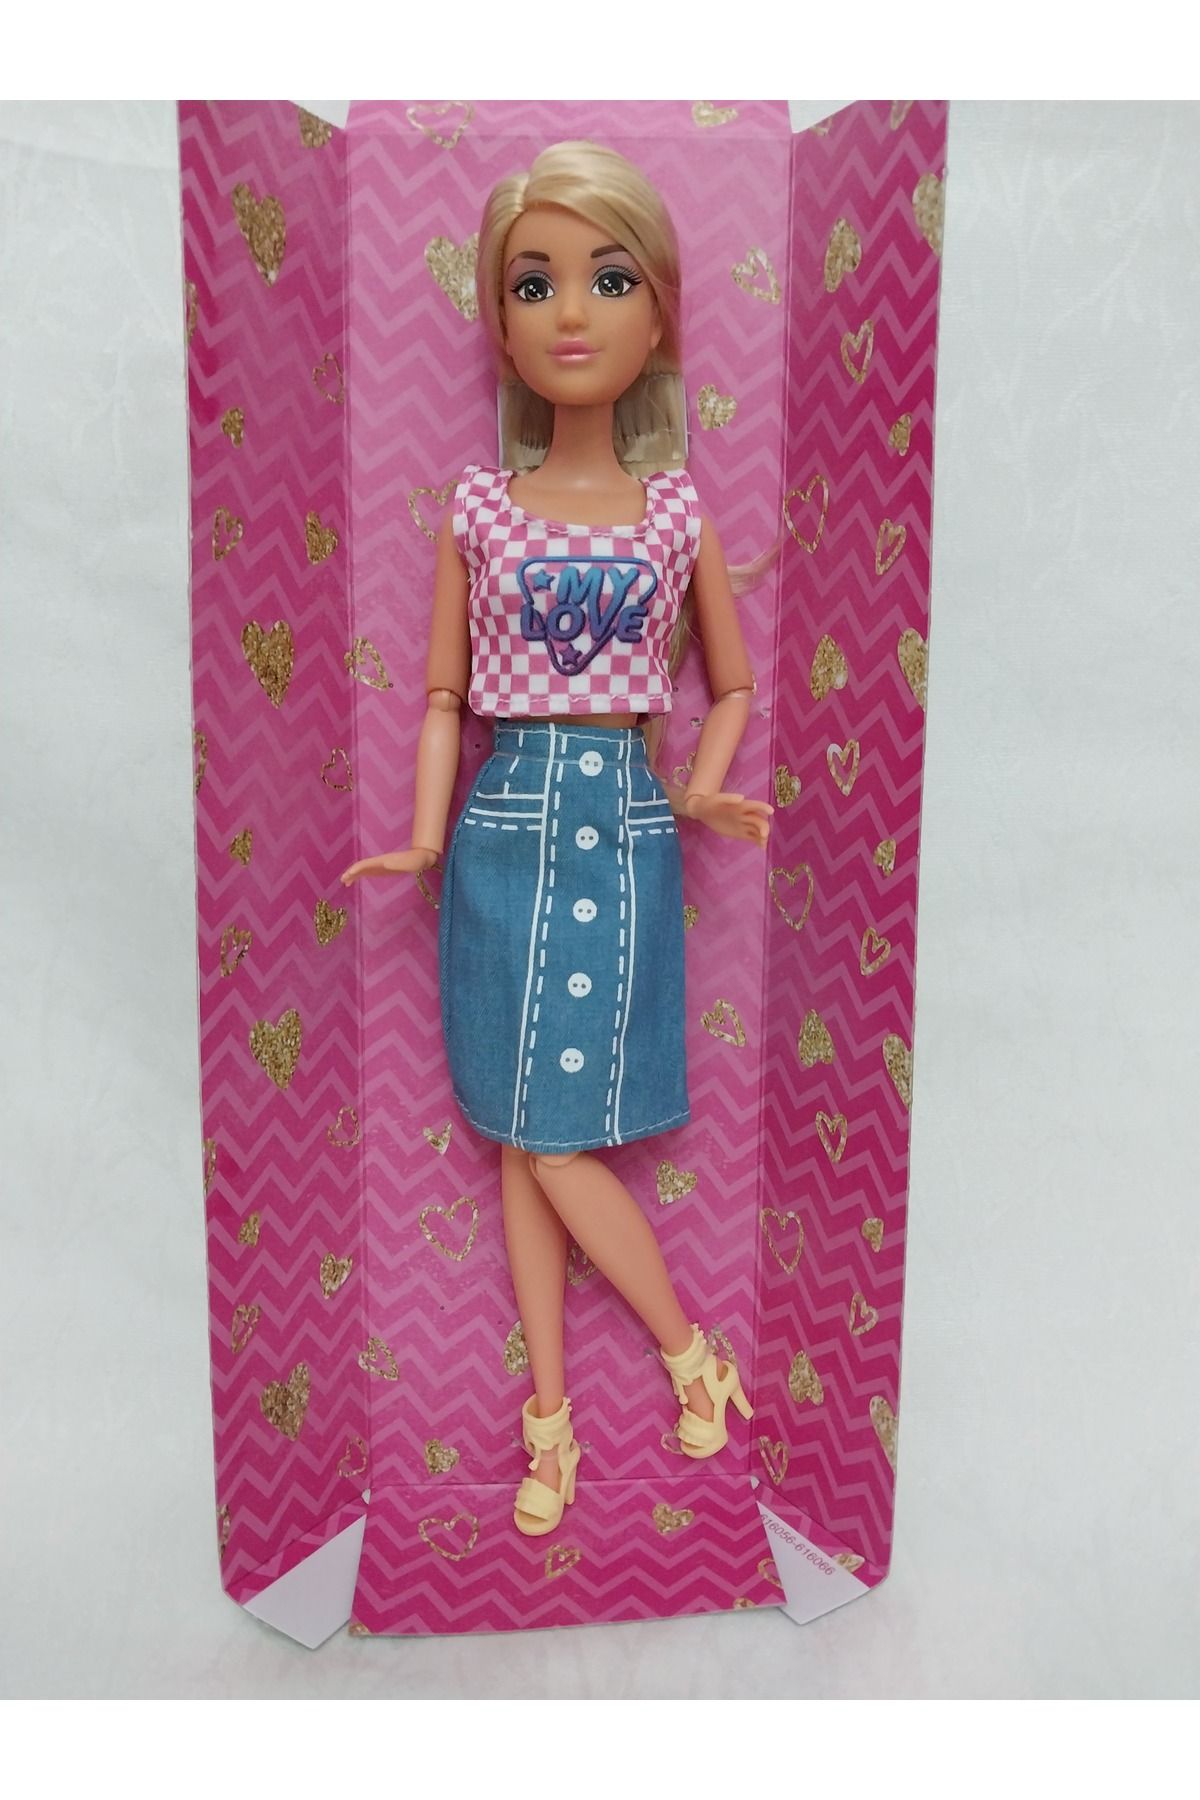 Halley Peluş Oyuncak Barbie Bebek Sarı Saçlı Pembe Bluz Mavi Kot Etek Detaylı Sarı Ayakkabı Aksesuarlı Eklemli 30 Cm